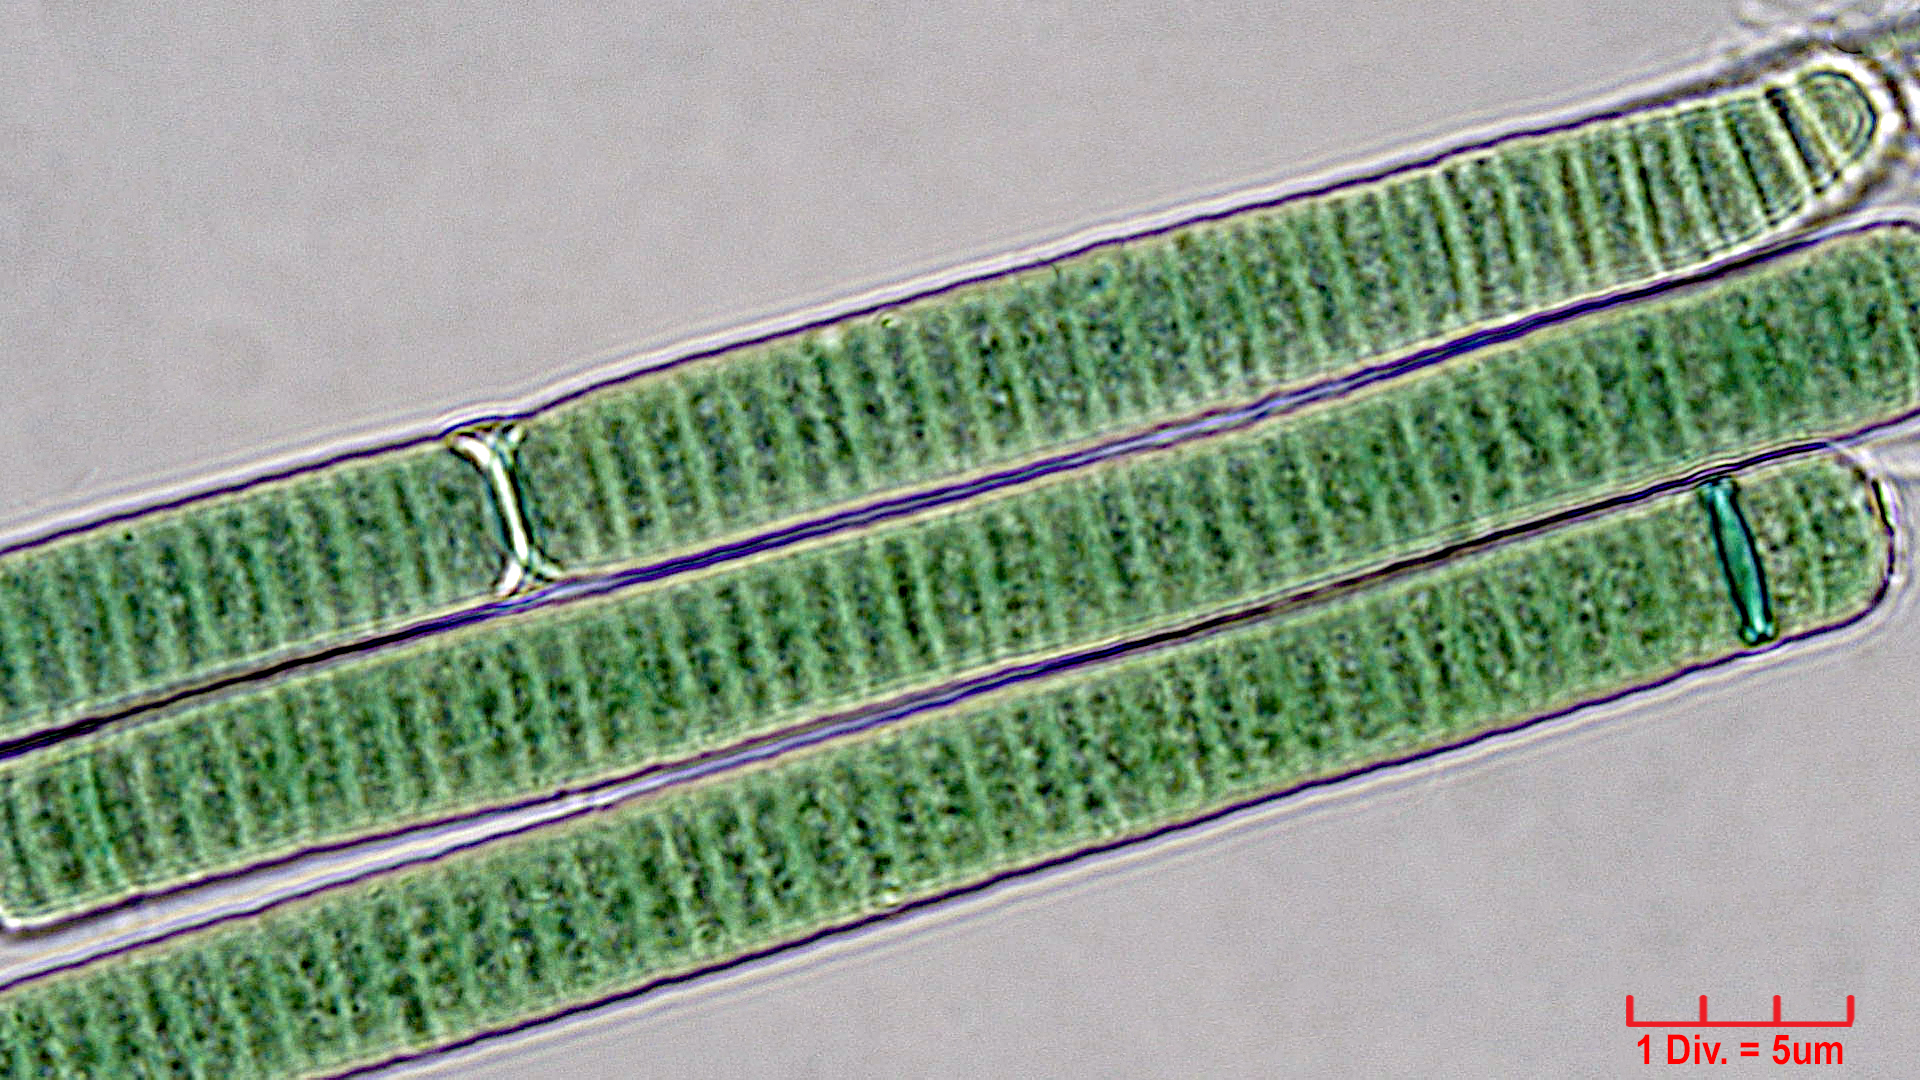 ./Cyanobacteria/Oscillatoriales/Oscillatoriaceae/Oscillatoria/curviceps/oscillatoria-curviceps-181.jpg